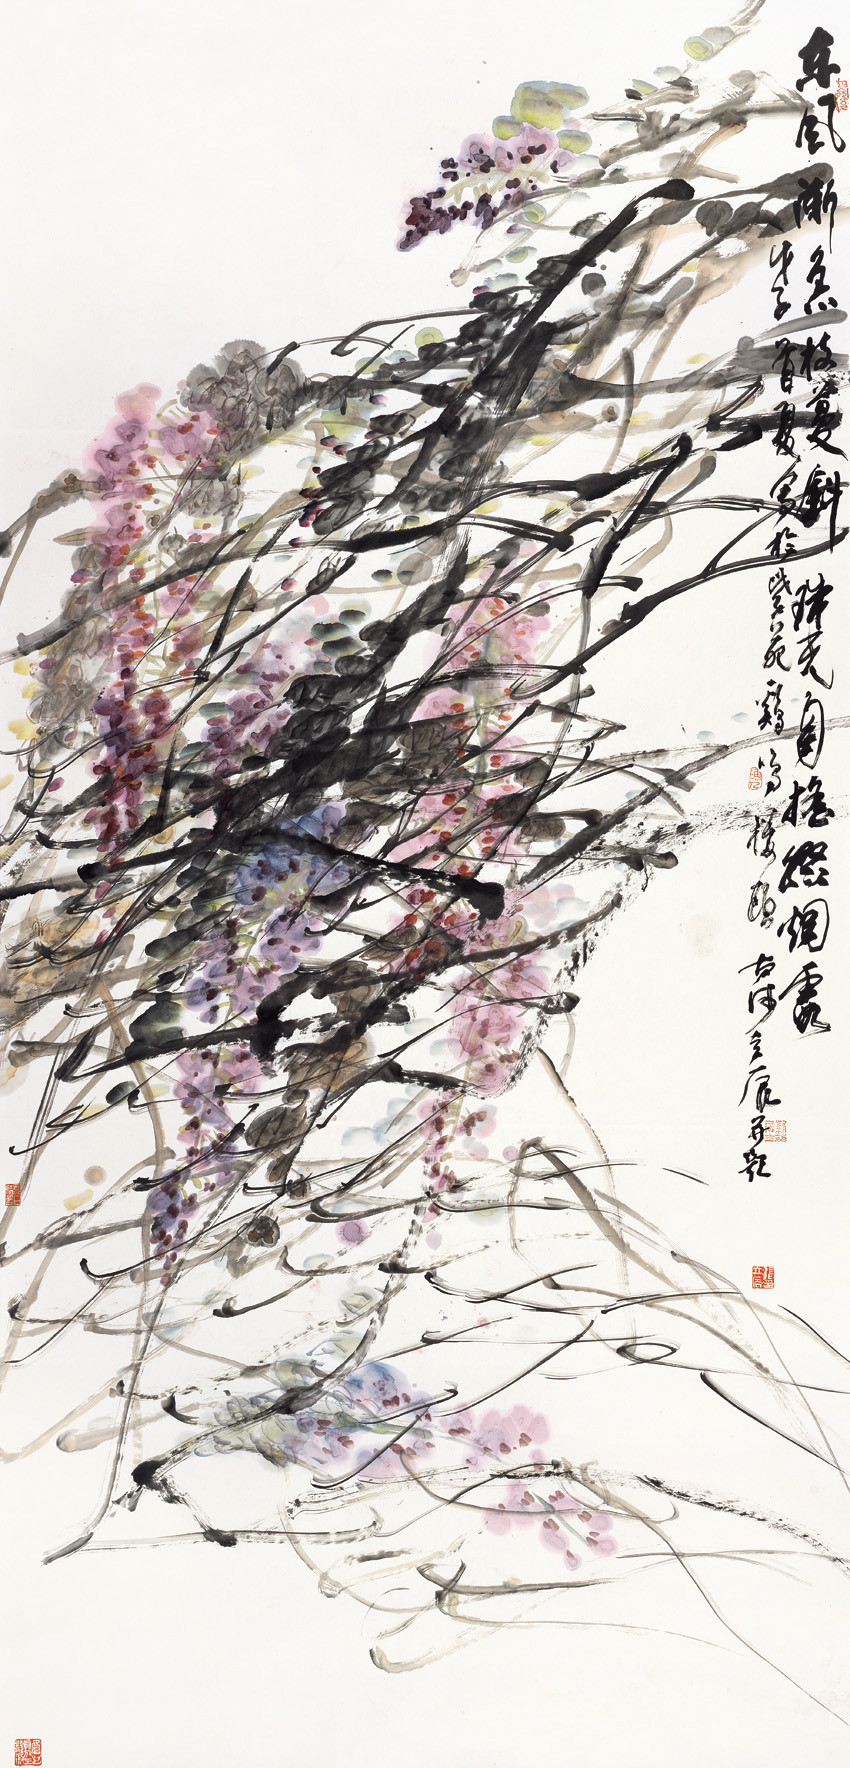 张立辰:写意精神是中国绘画有别于西方艺术科学精神的重要标志